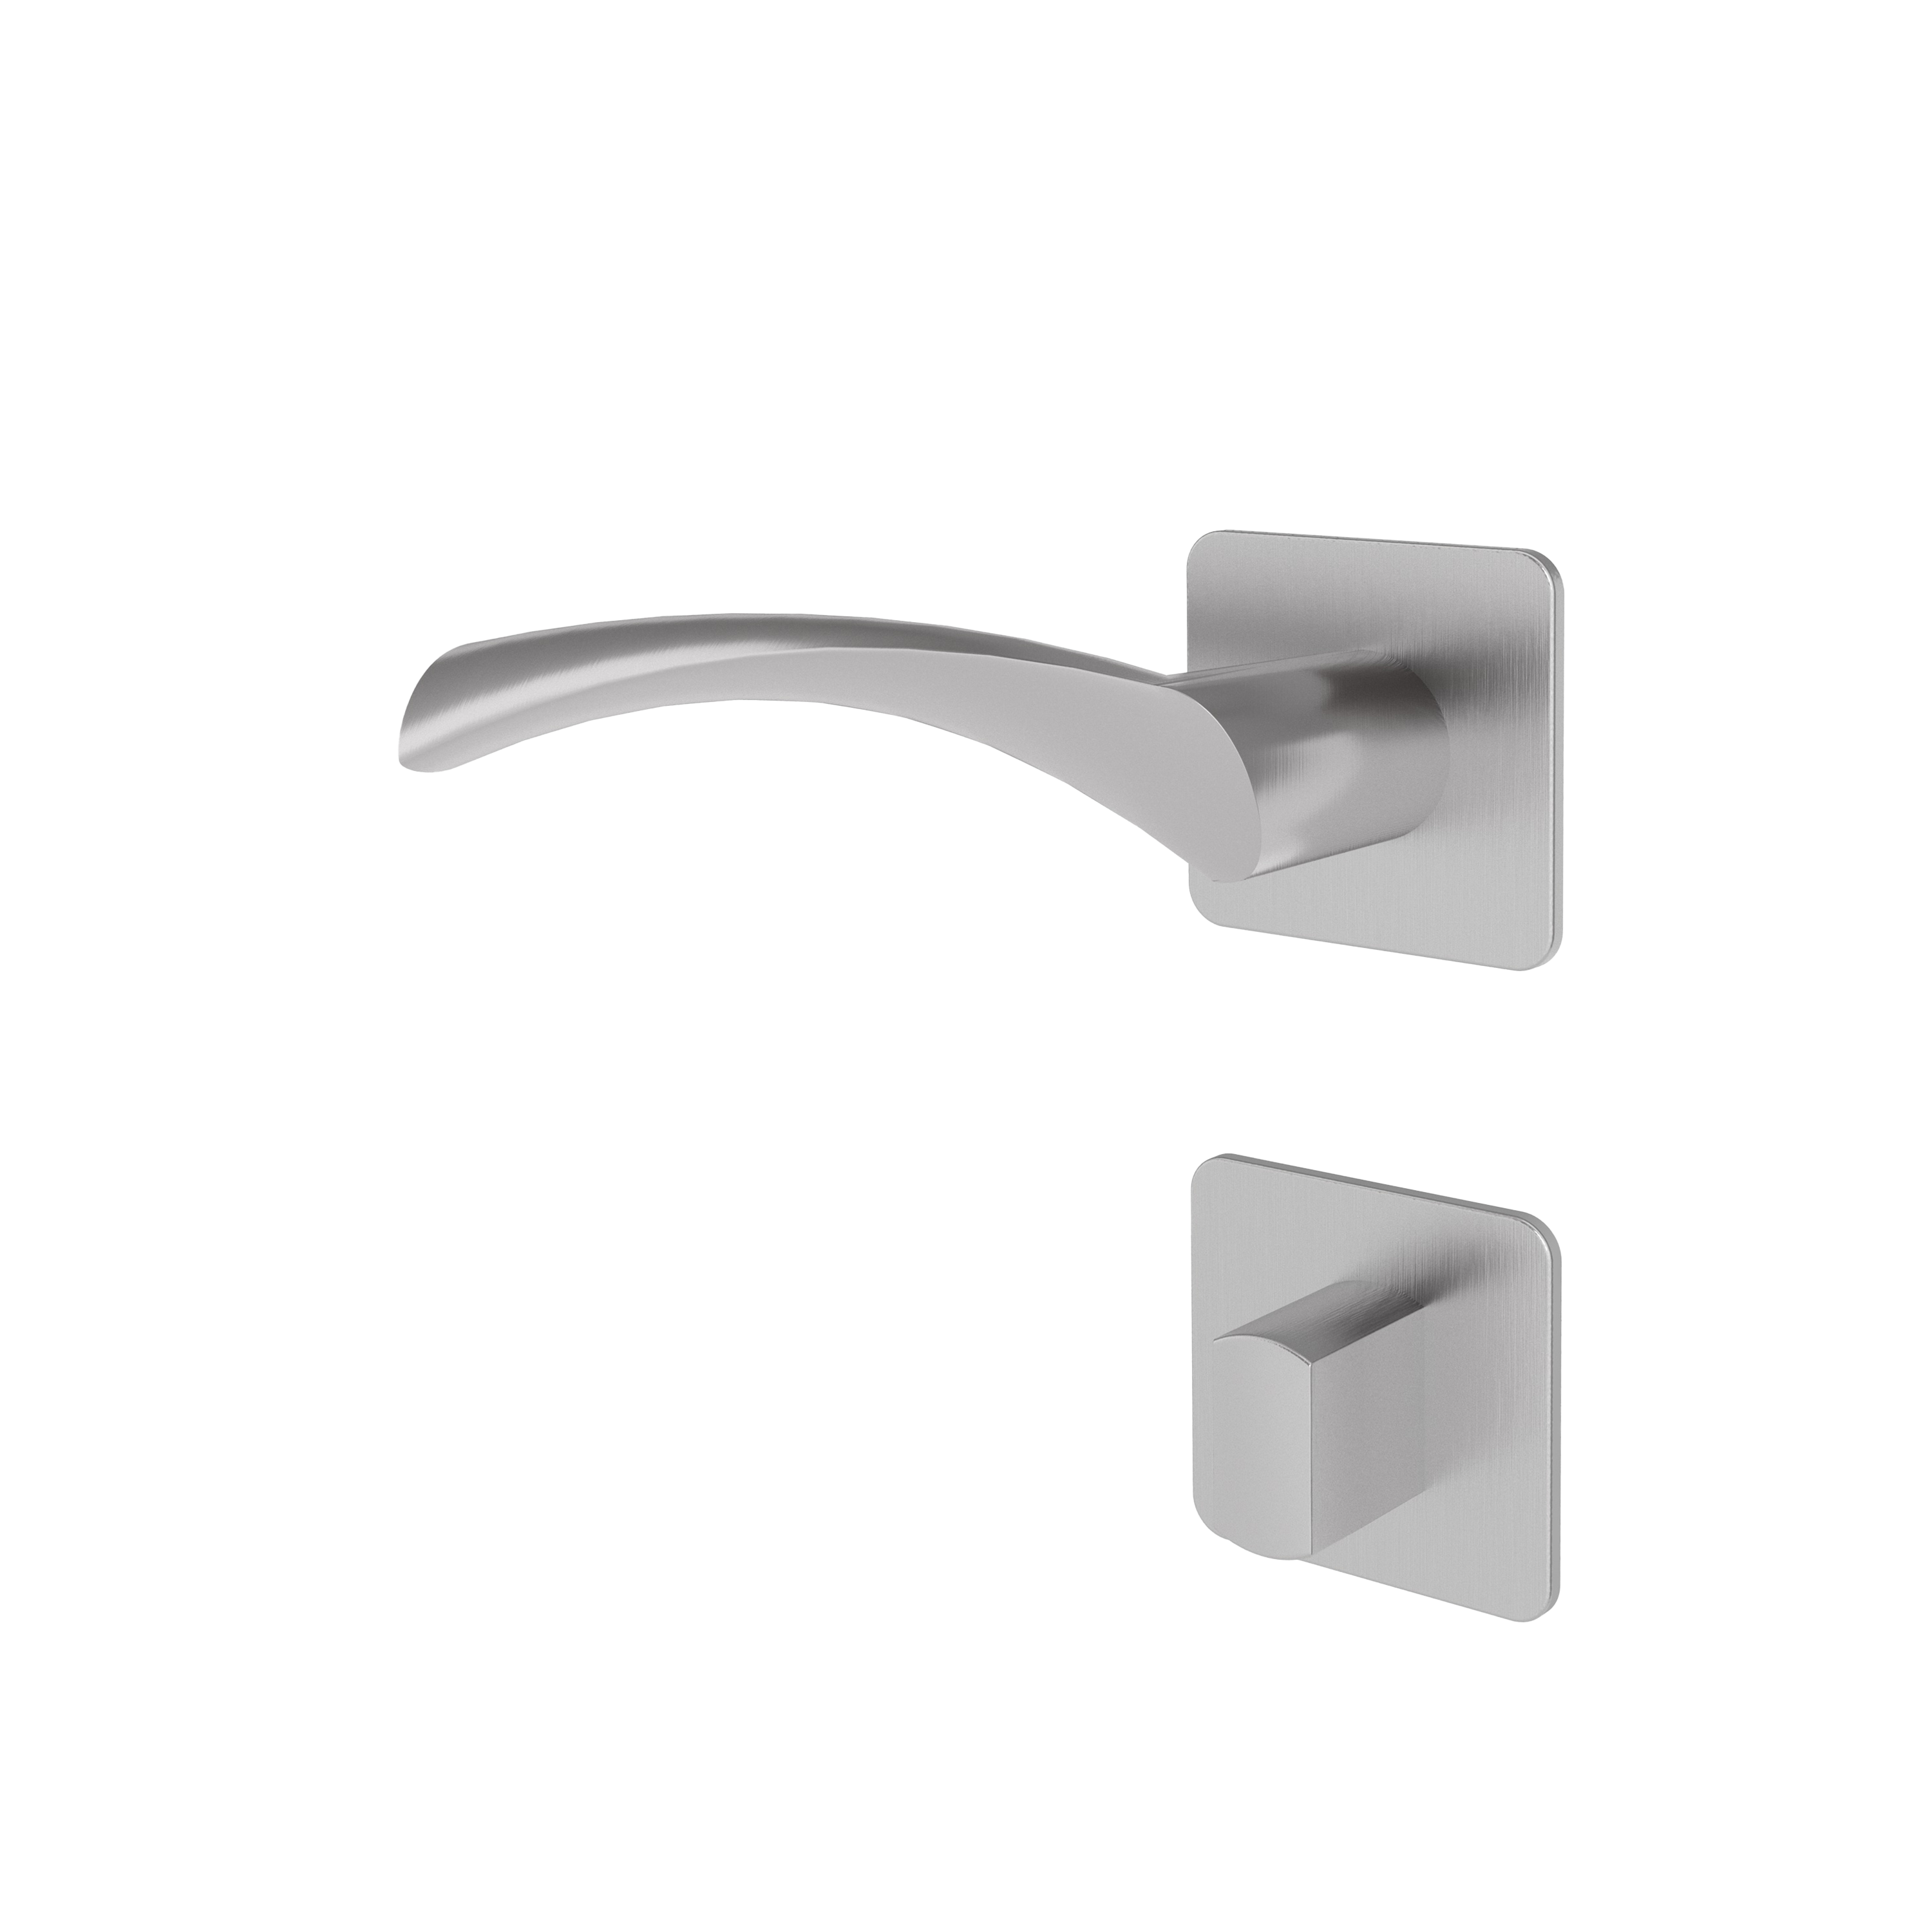 Türgriff mit Flachrosette eckig L-Form geschwungen Modell Garuna pure Edelstahl Clipsystem